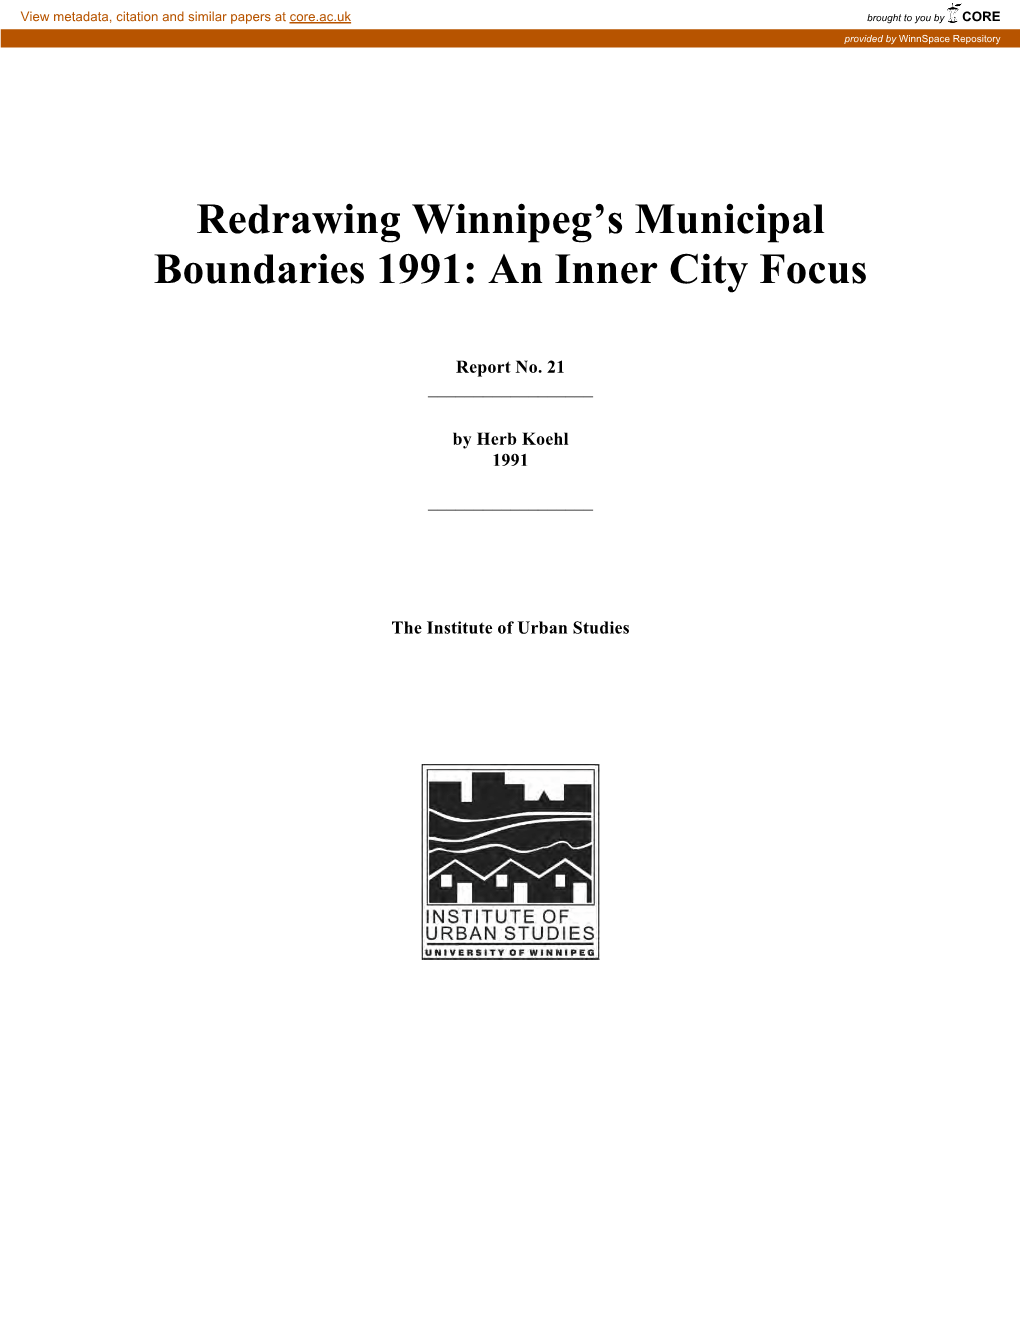 Redrawing Winnipeg's Municipal Boundaries 1991: an Inner City Focus